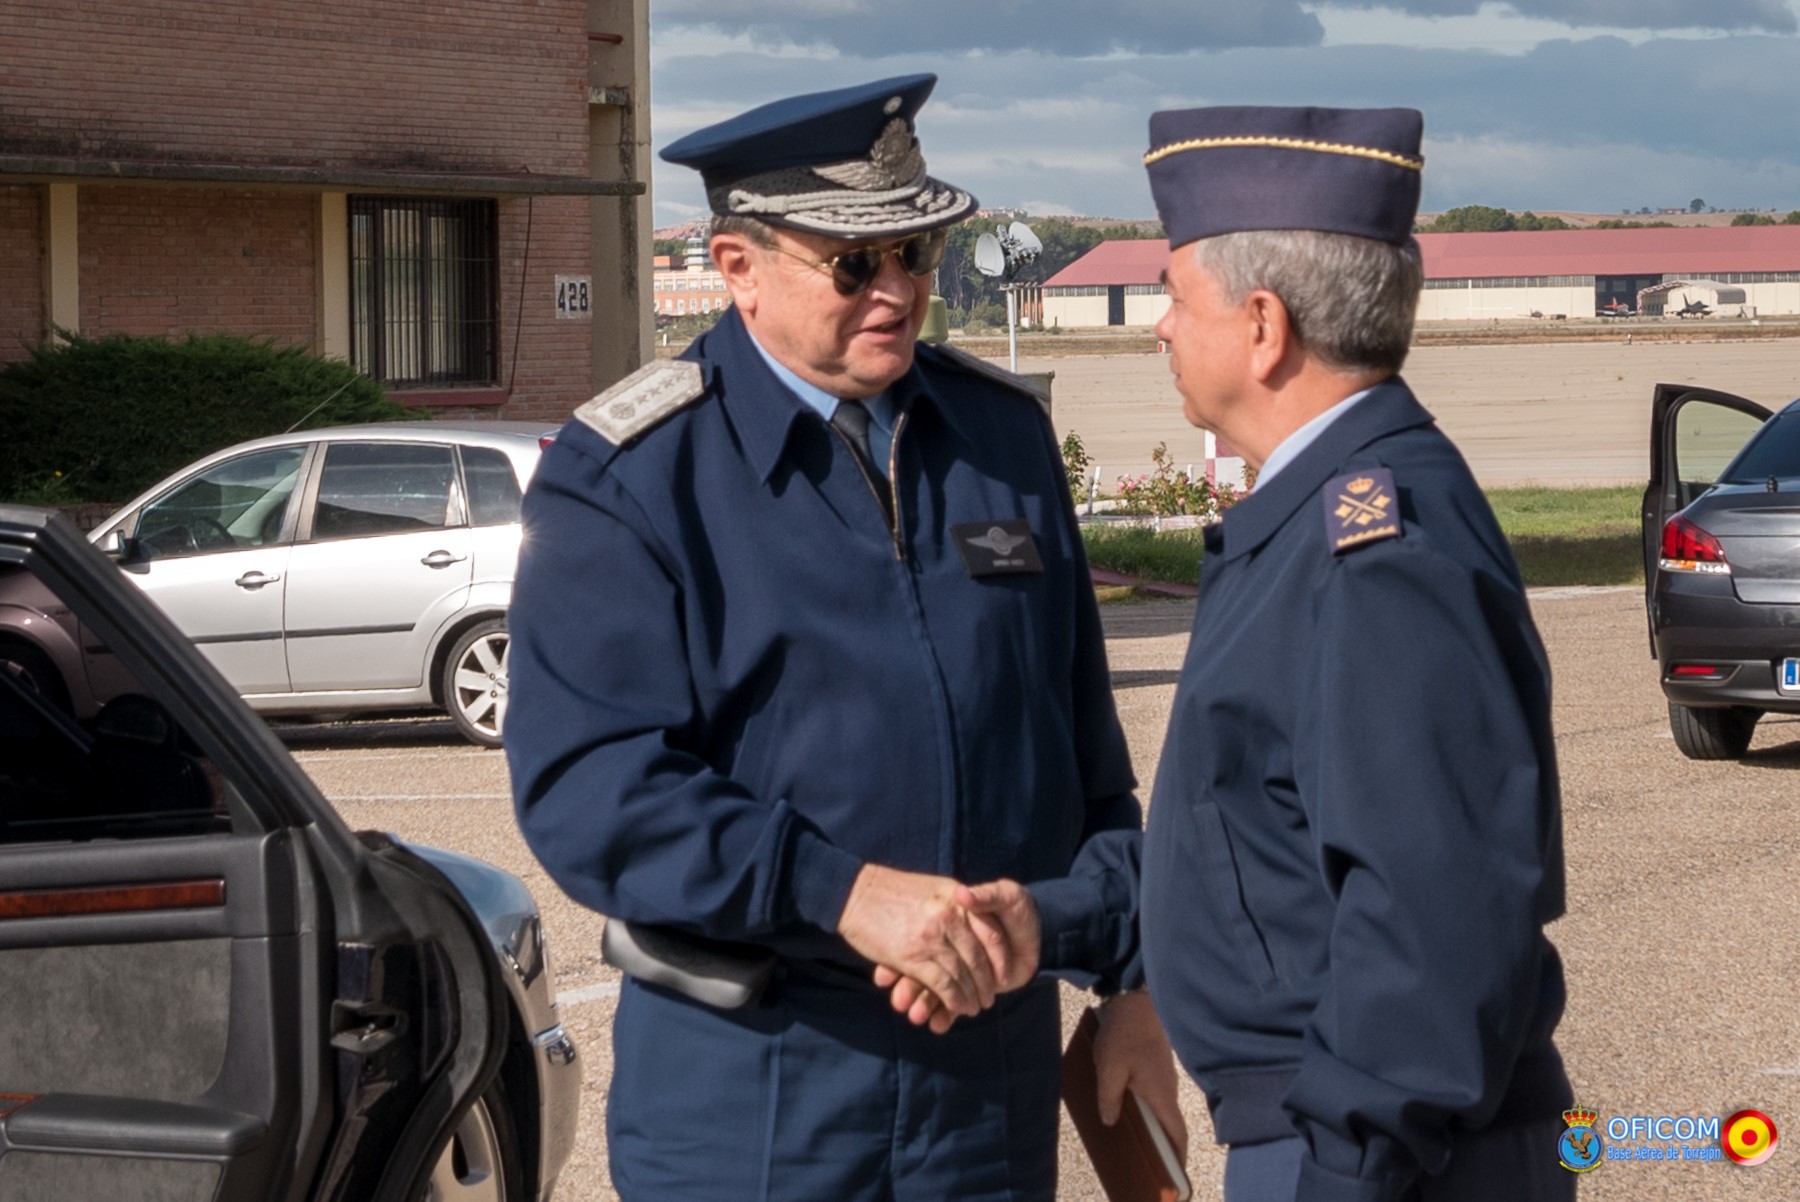 El Jefe del Estado Mayor de la Fuerza Aérea Argentina visita el Centro de Operaciones Aéreas Combinadas de Torrejón